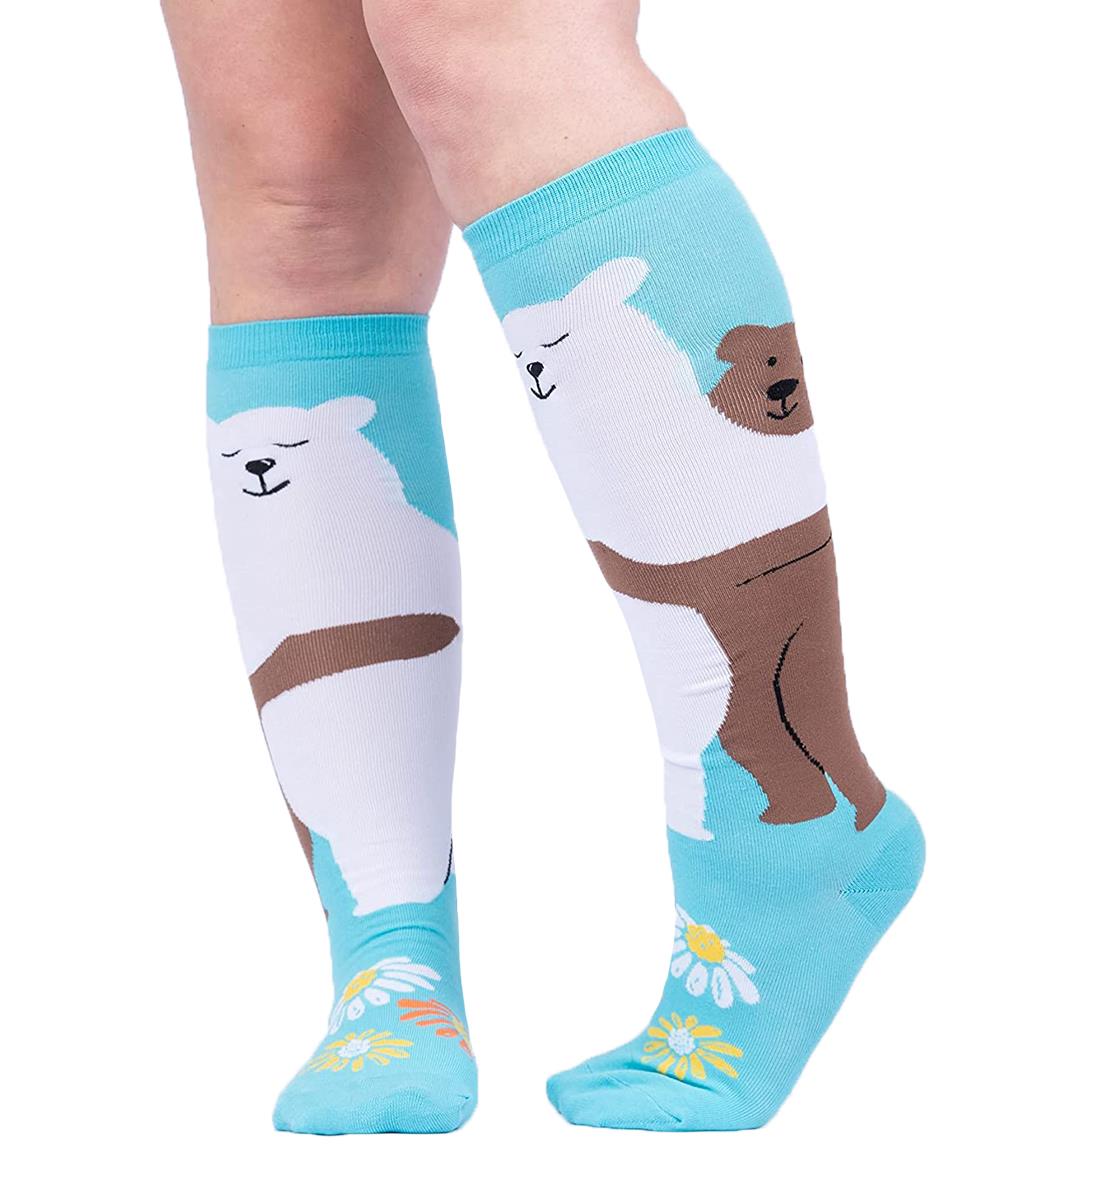 SOCK it to me Unisex Knee High Socks (F0611),Beary Best Friends - Beary Best Friends,One Size